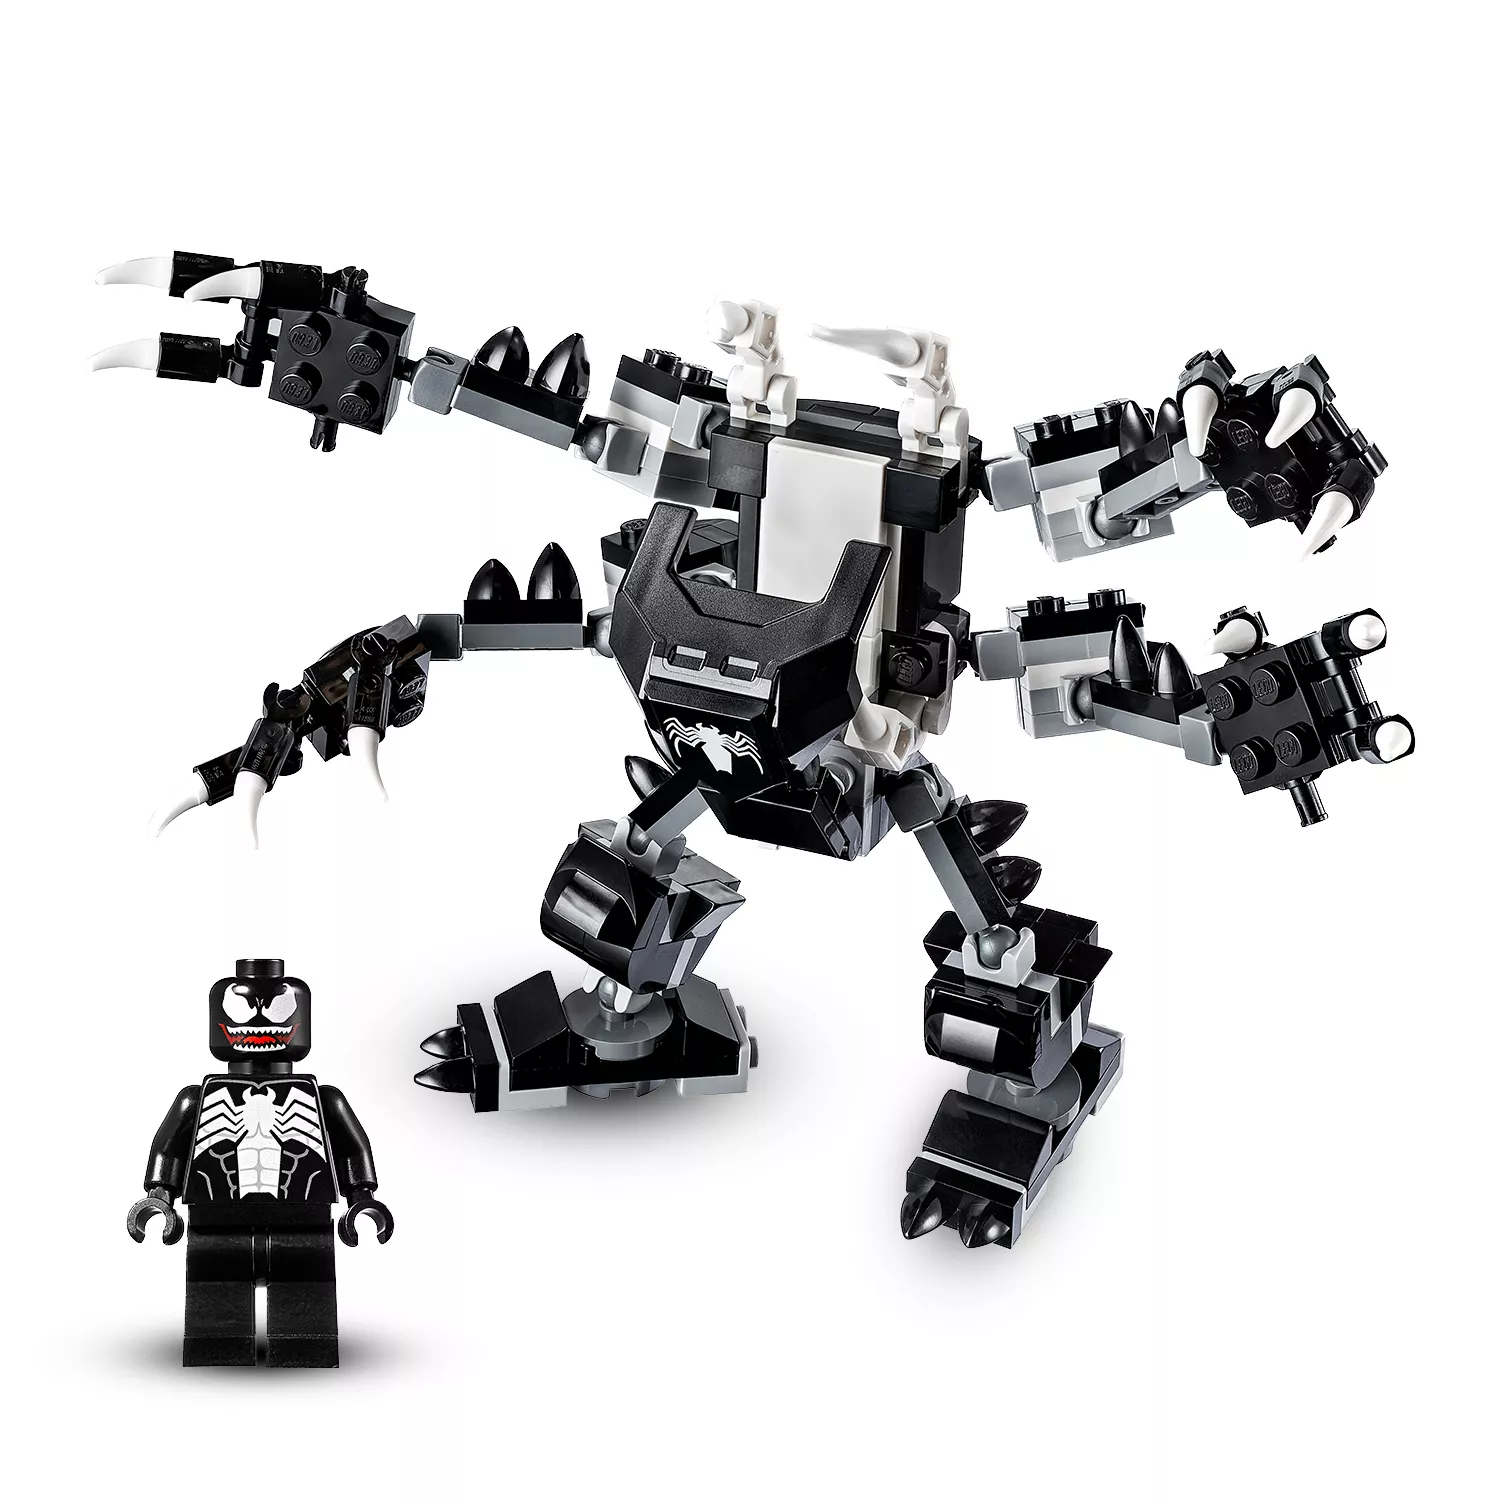 LEGO Marvel Super Heroes Spiderjet vs. Venom Mech